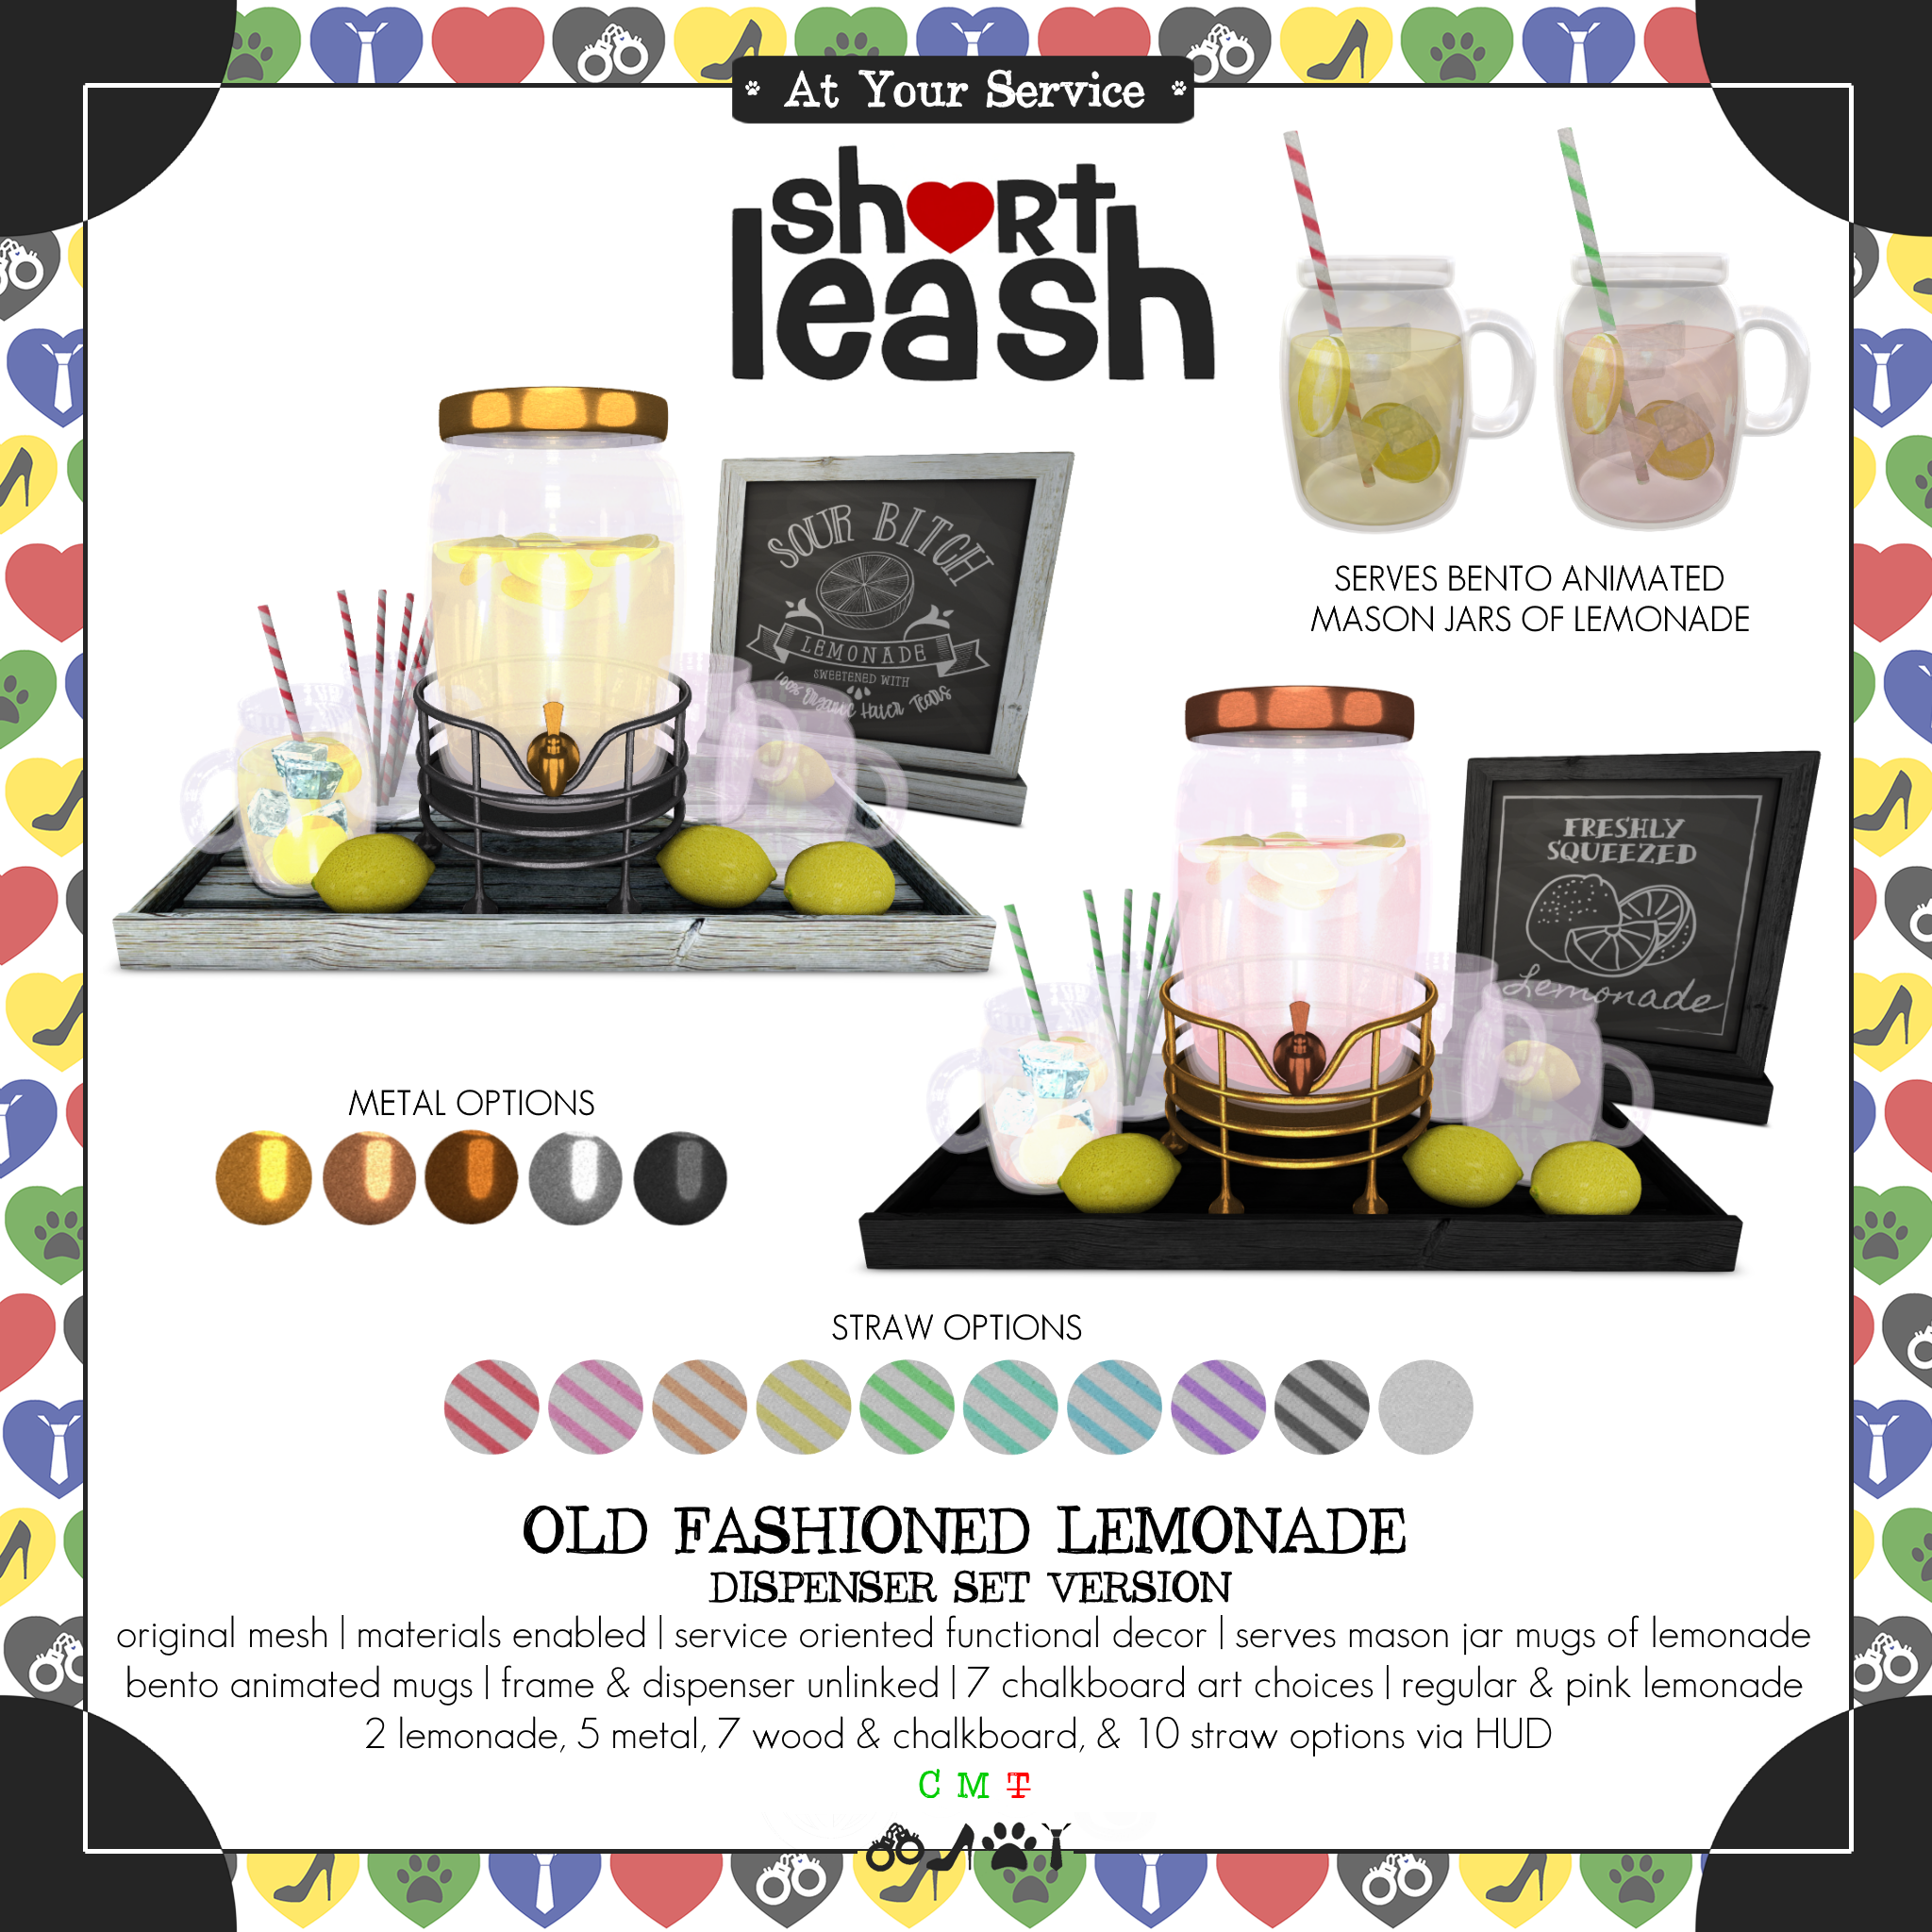 Short Leash – Old Fashioned Lemonade: Dispenser Set Version